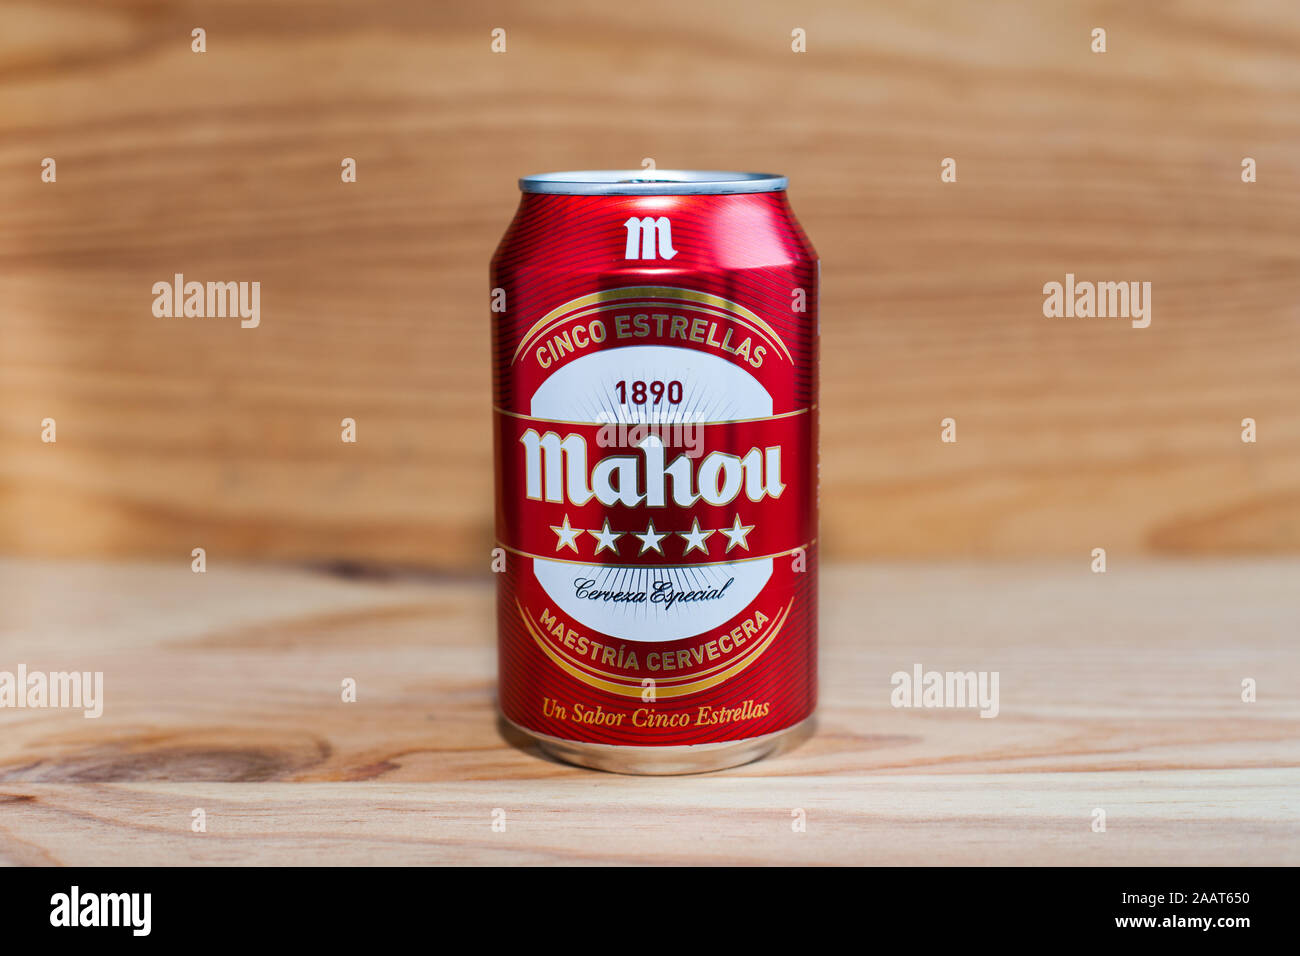 MANISES, Valence/Espagne - 27 janvier 2019 : de la bière peut Mahou sur bois Banque D'Images